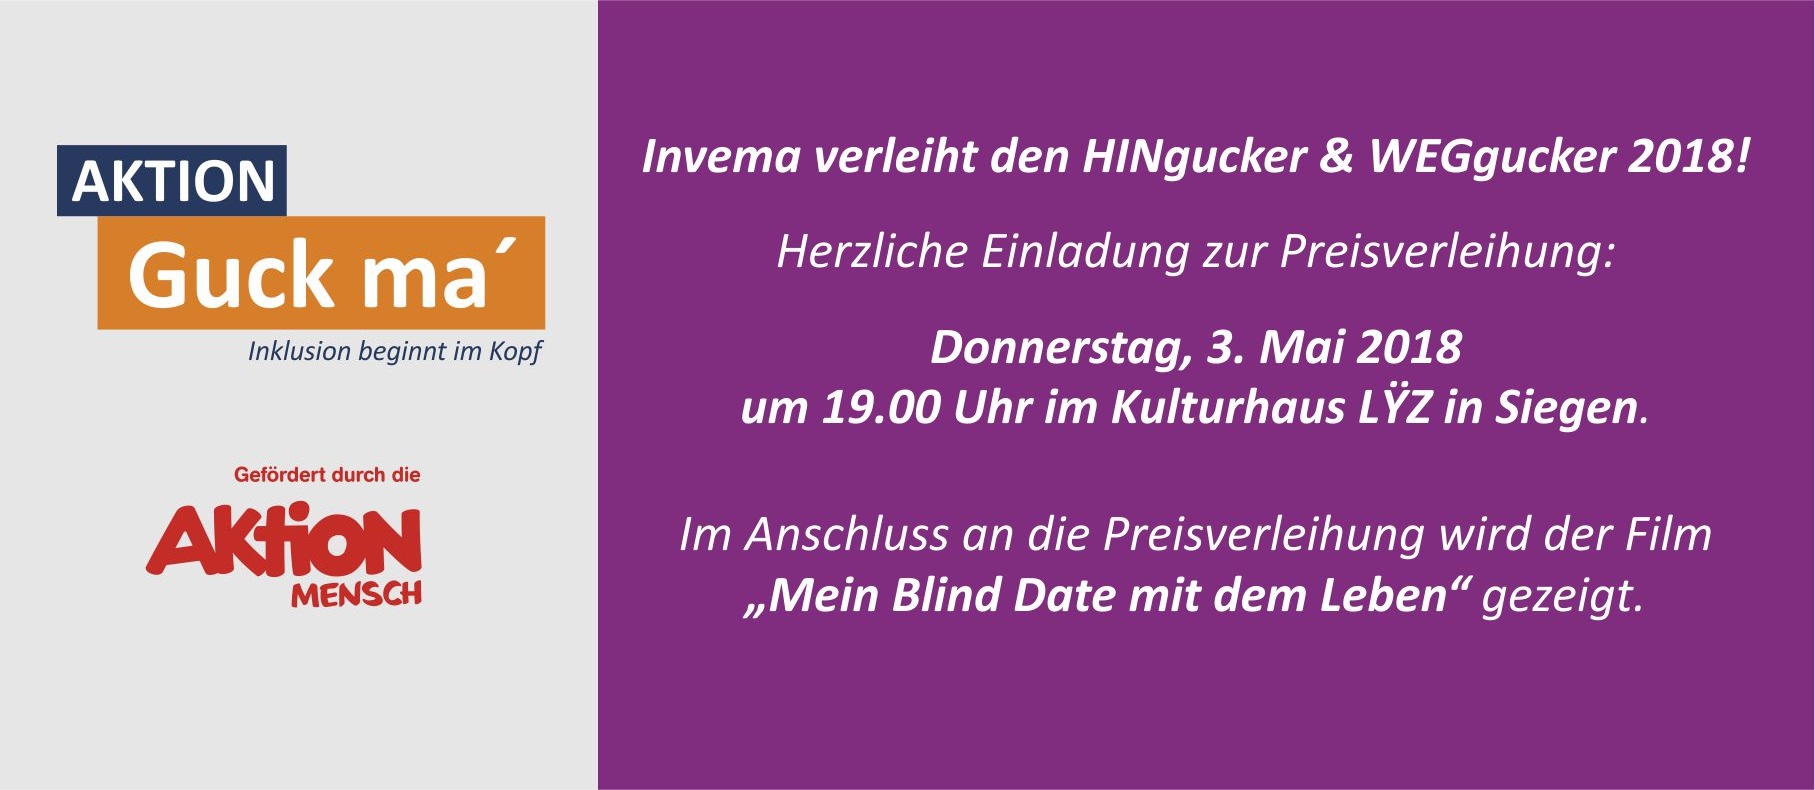 Invema verleiht den HINgucker & WEGgucker 2018! Herzliche Einladung zur Preisverleihung: Donnerstag, 3. Mai 2018 um 19.00 Uhr im Kulturhaus LYZ in Siegen. Im Anschluss an die Preisverleihung wird der Film "Mein Blind Date mit dem Leben" gezeigt.